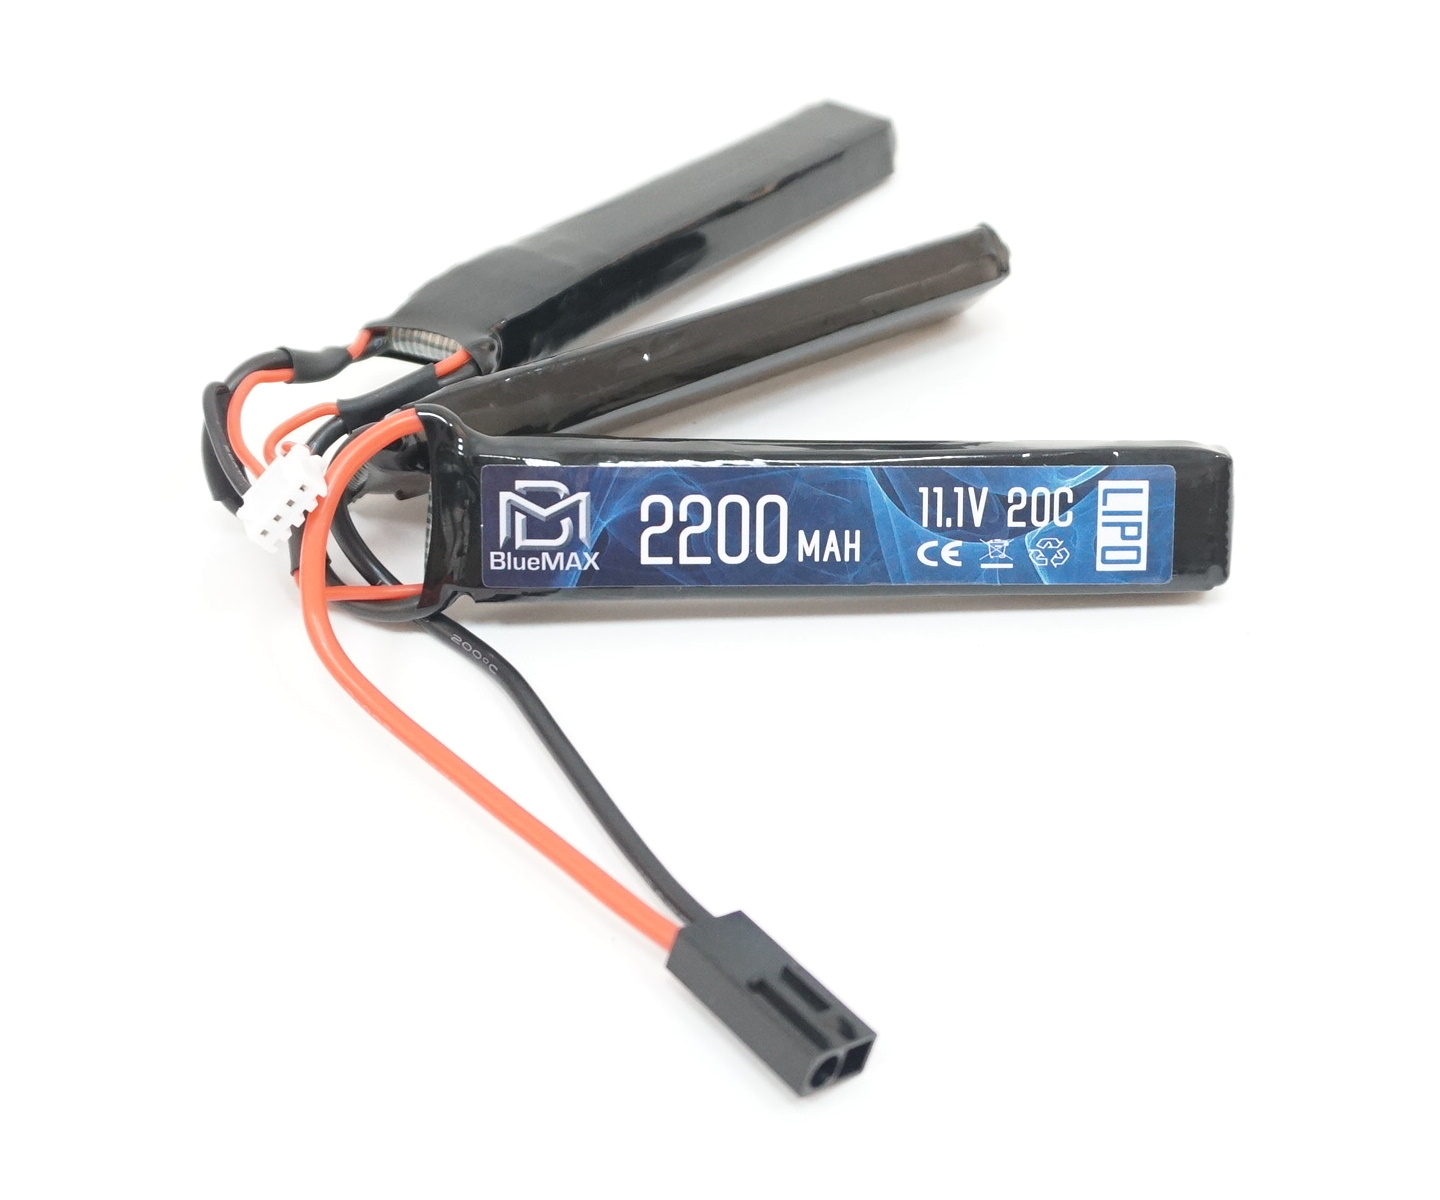 Аккумулятор BlueMAX Li-Po 11.1V 2200mah 20C, 3 x (102x20x10) мм (триплет)